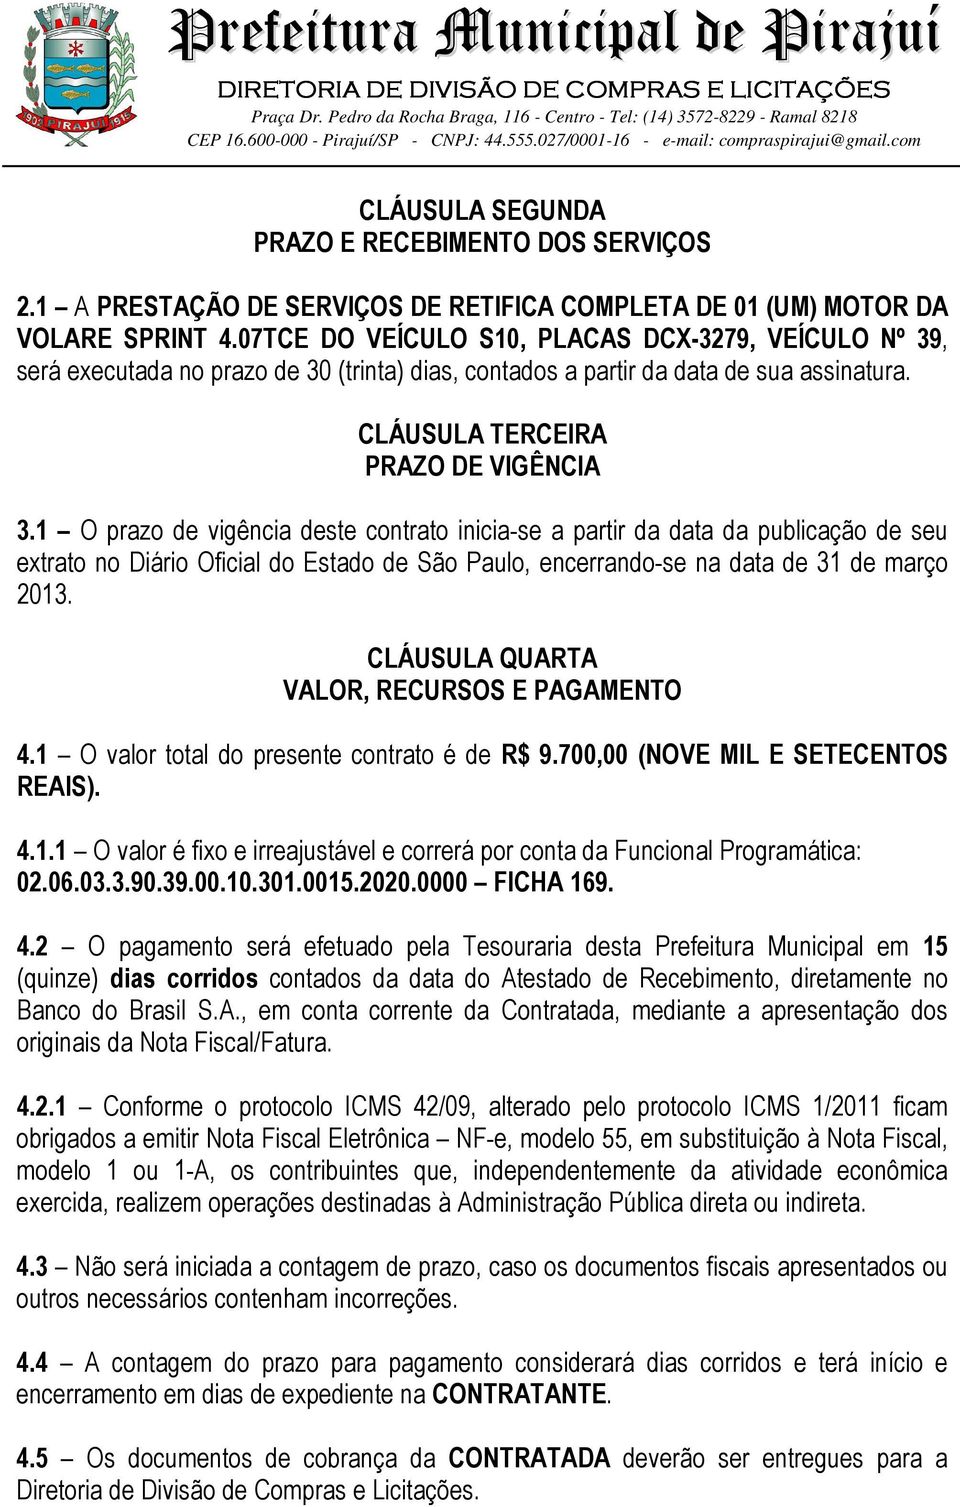 1 O prazo de vigência deste contrato inicia-se a partir da data da publicação de seu extrato no Diário Oficial do Estado de São Paulo, encerrando-se na data de 31 de março 2013.